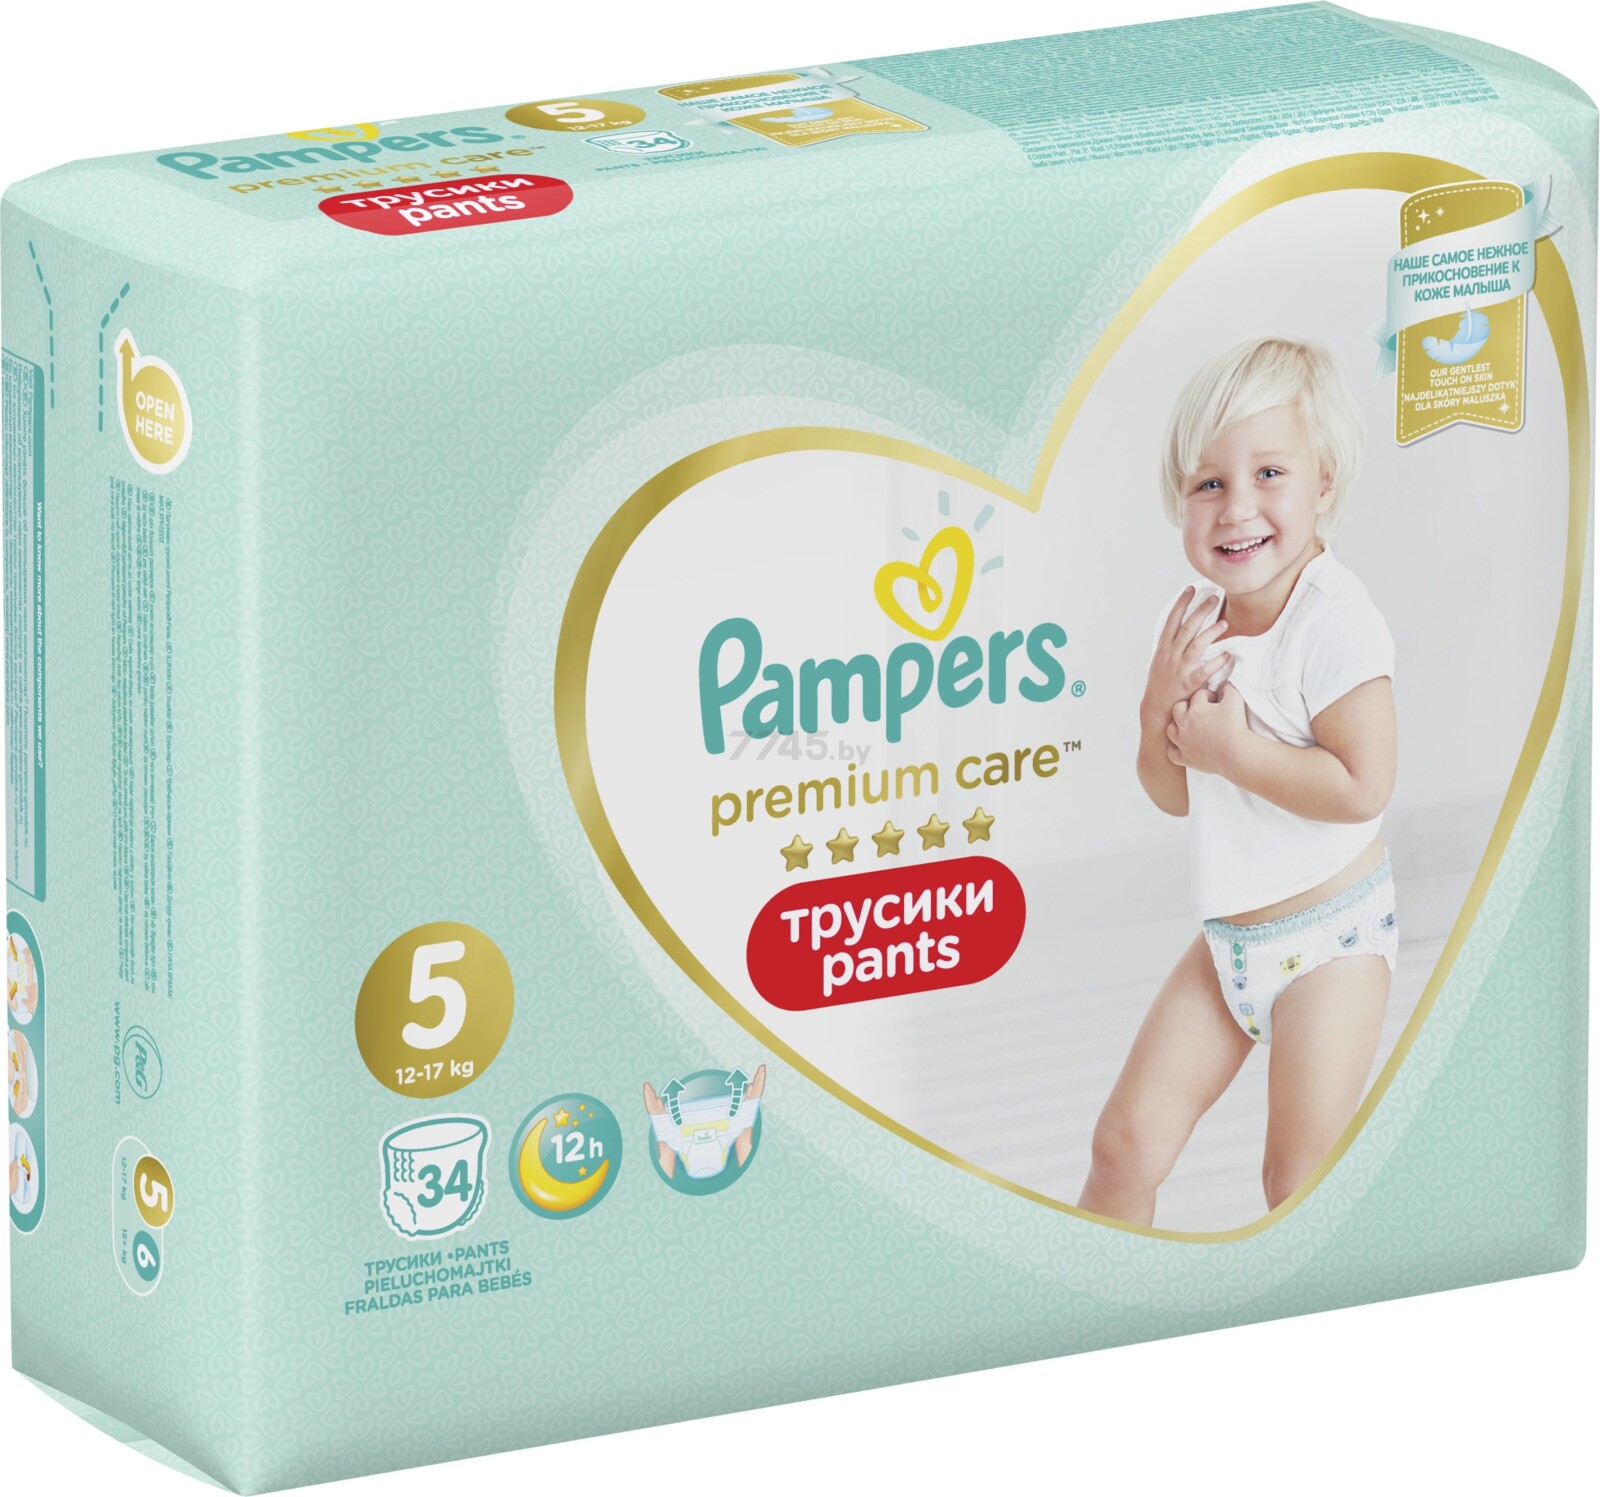 Подгузники-трусики PAMPERS Premium Care Pants 5 Junior 12-17 кг 34 штуки (8001090759870) - Фото 4